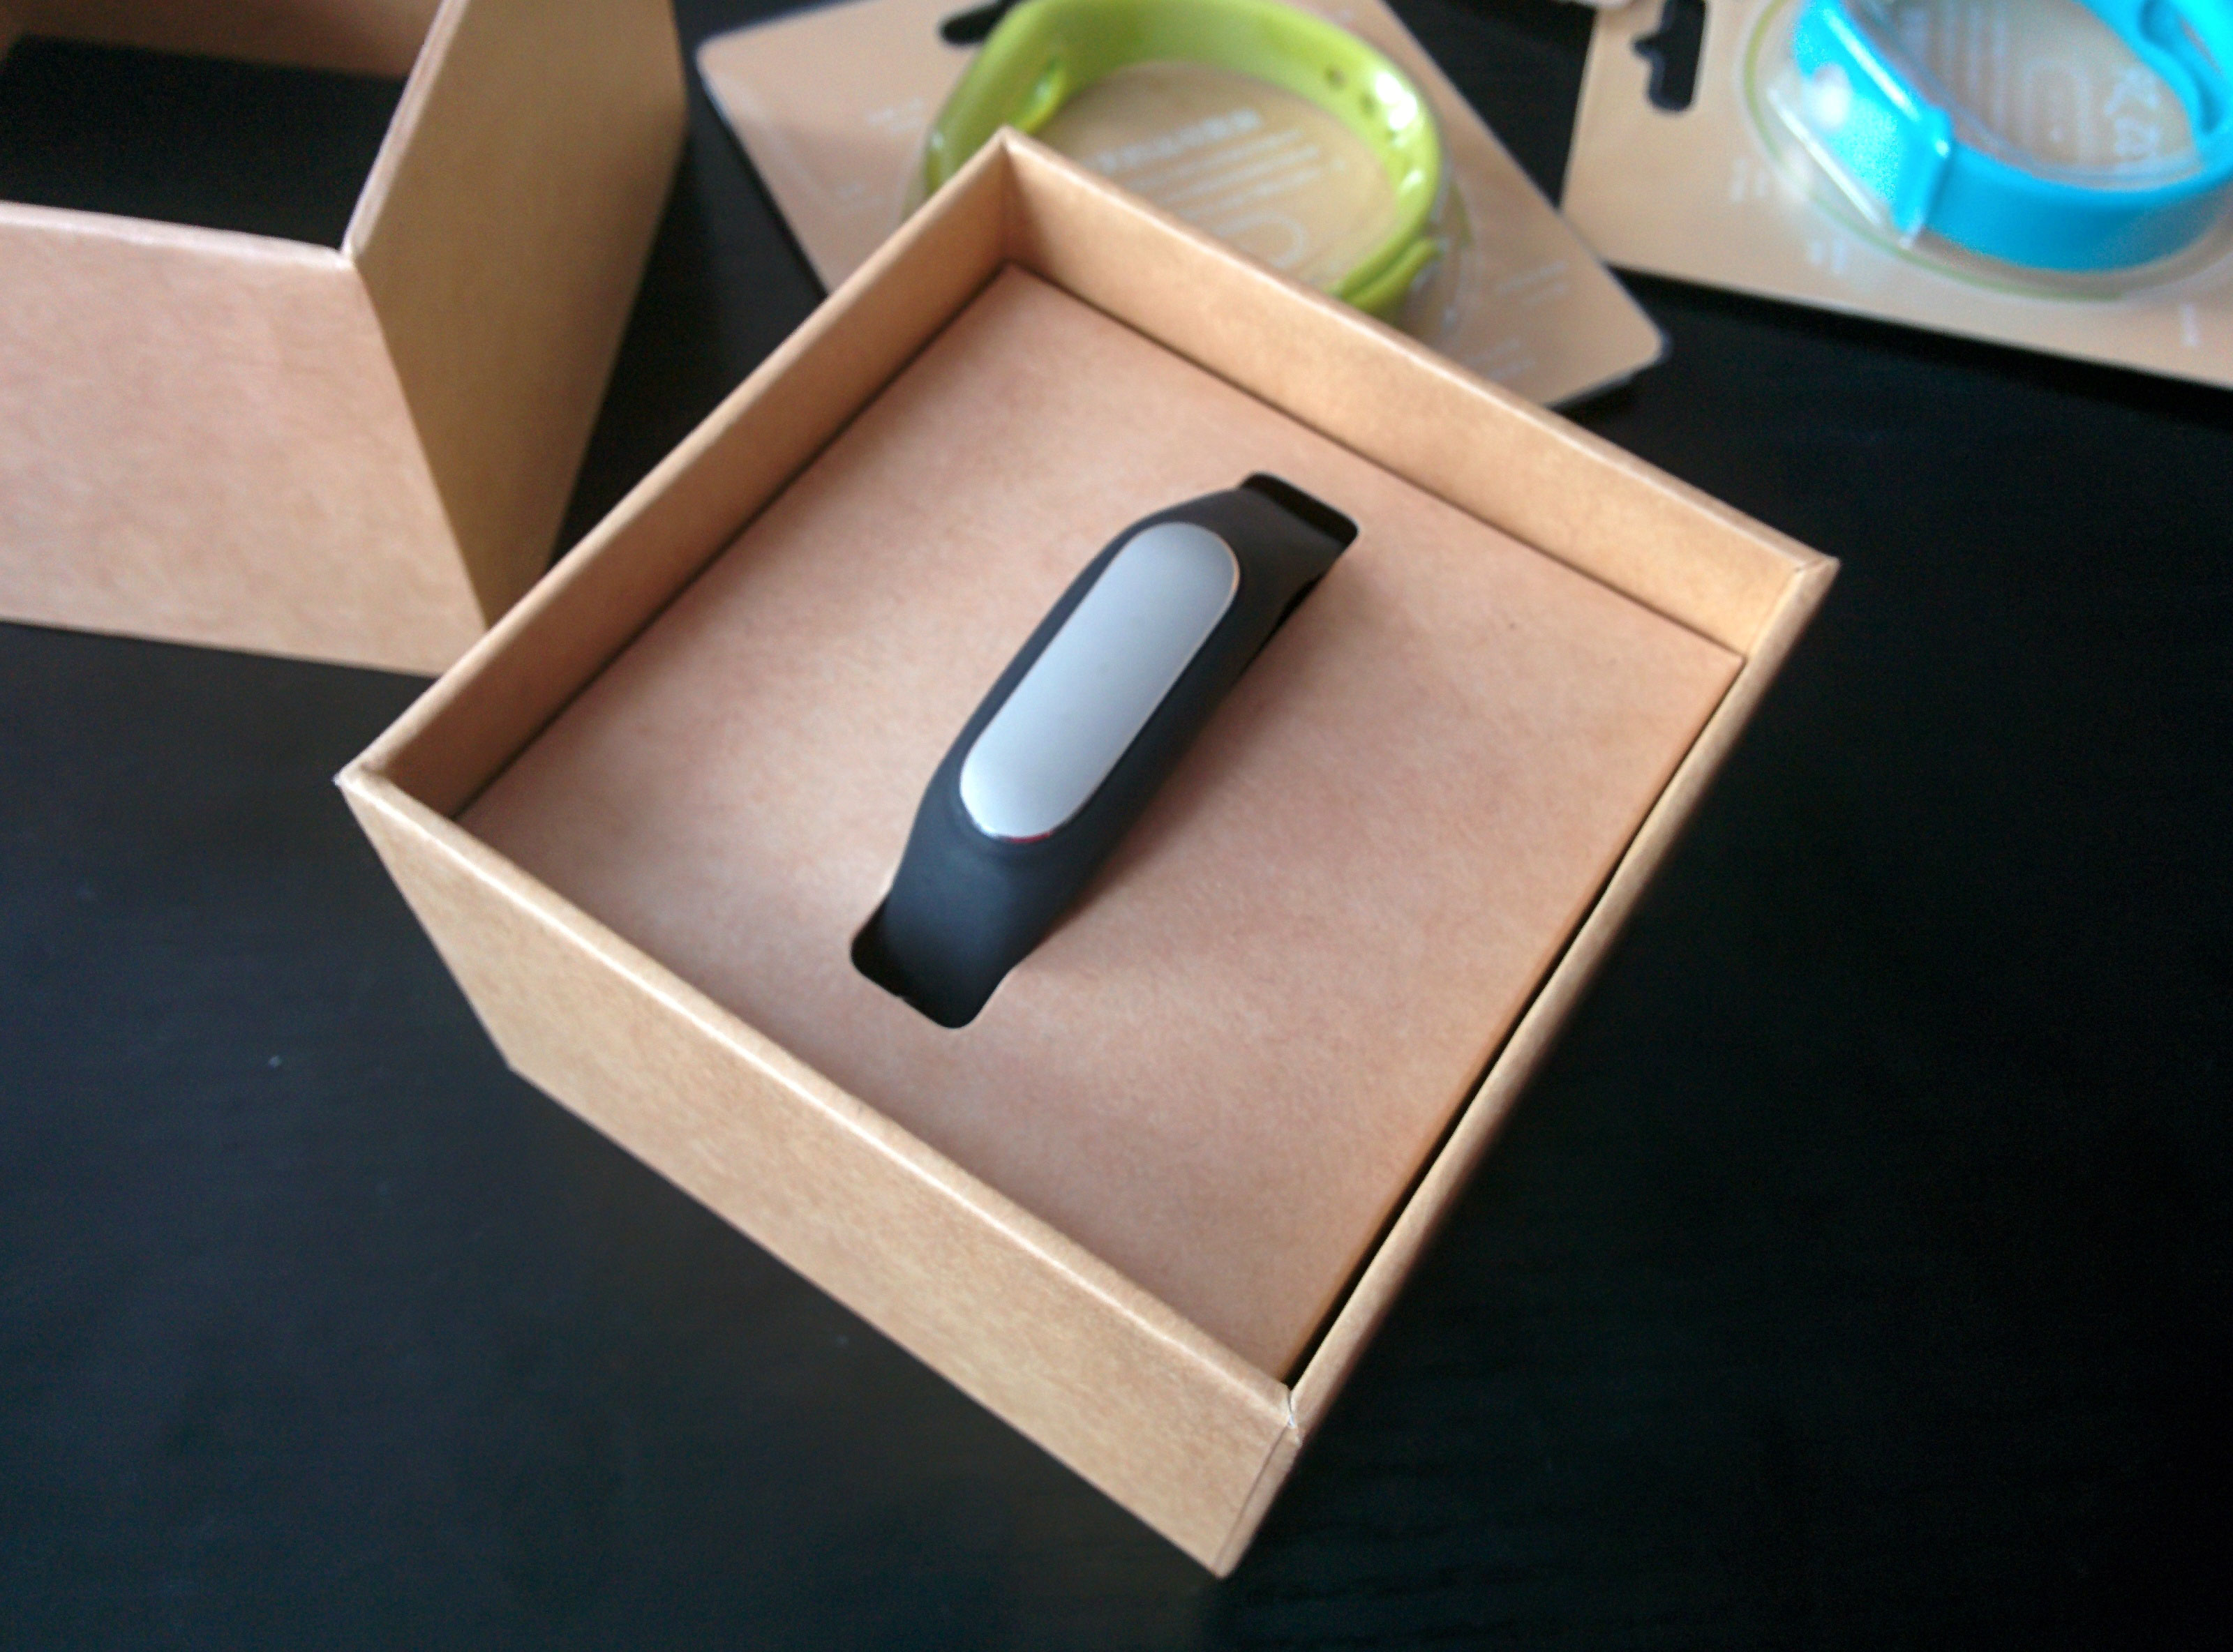 Xiaomi Mi Band (а саме так називається пристрій) приїде до вас в гарній картонній коробці, упакованої в прозорий пластик